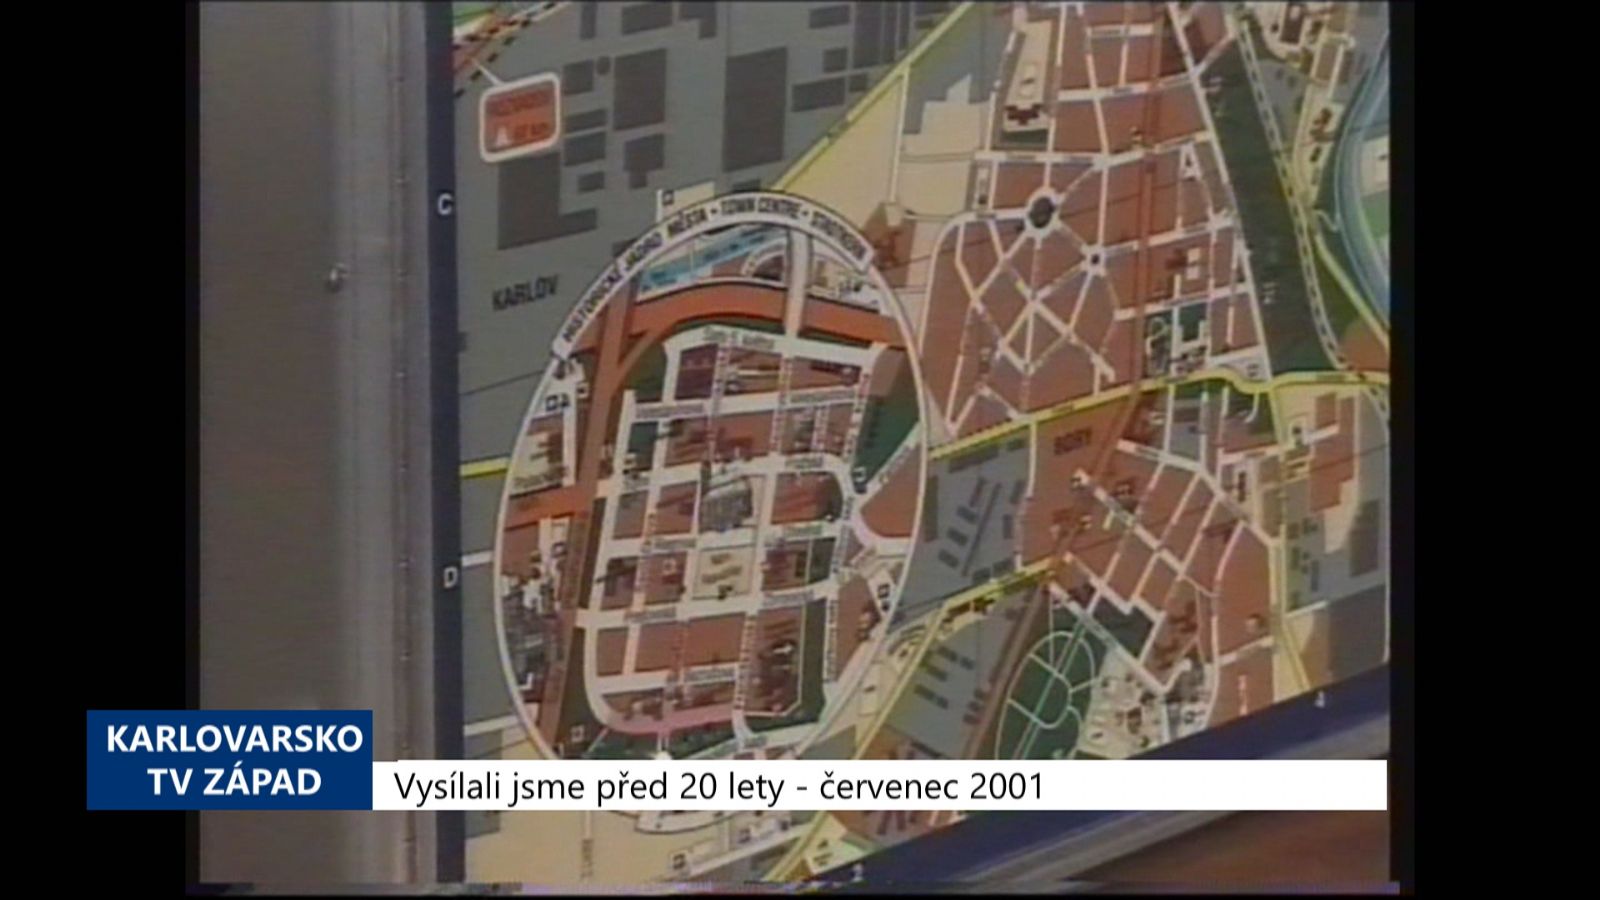 2001 – Sokolov: Městem vás provede zvukový orientační panel (TV západ)